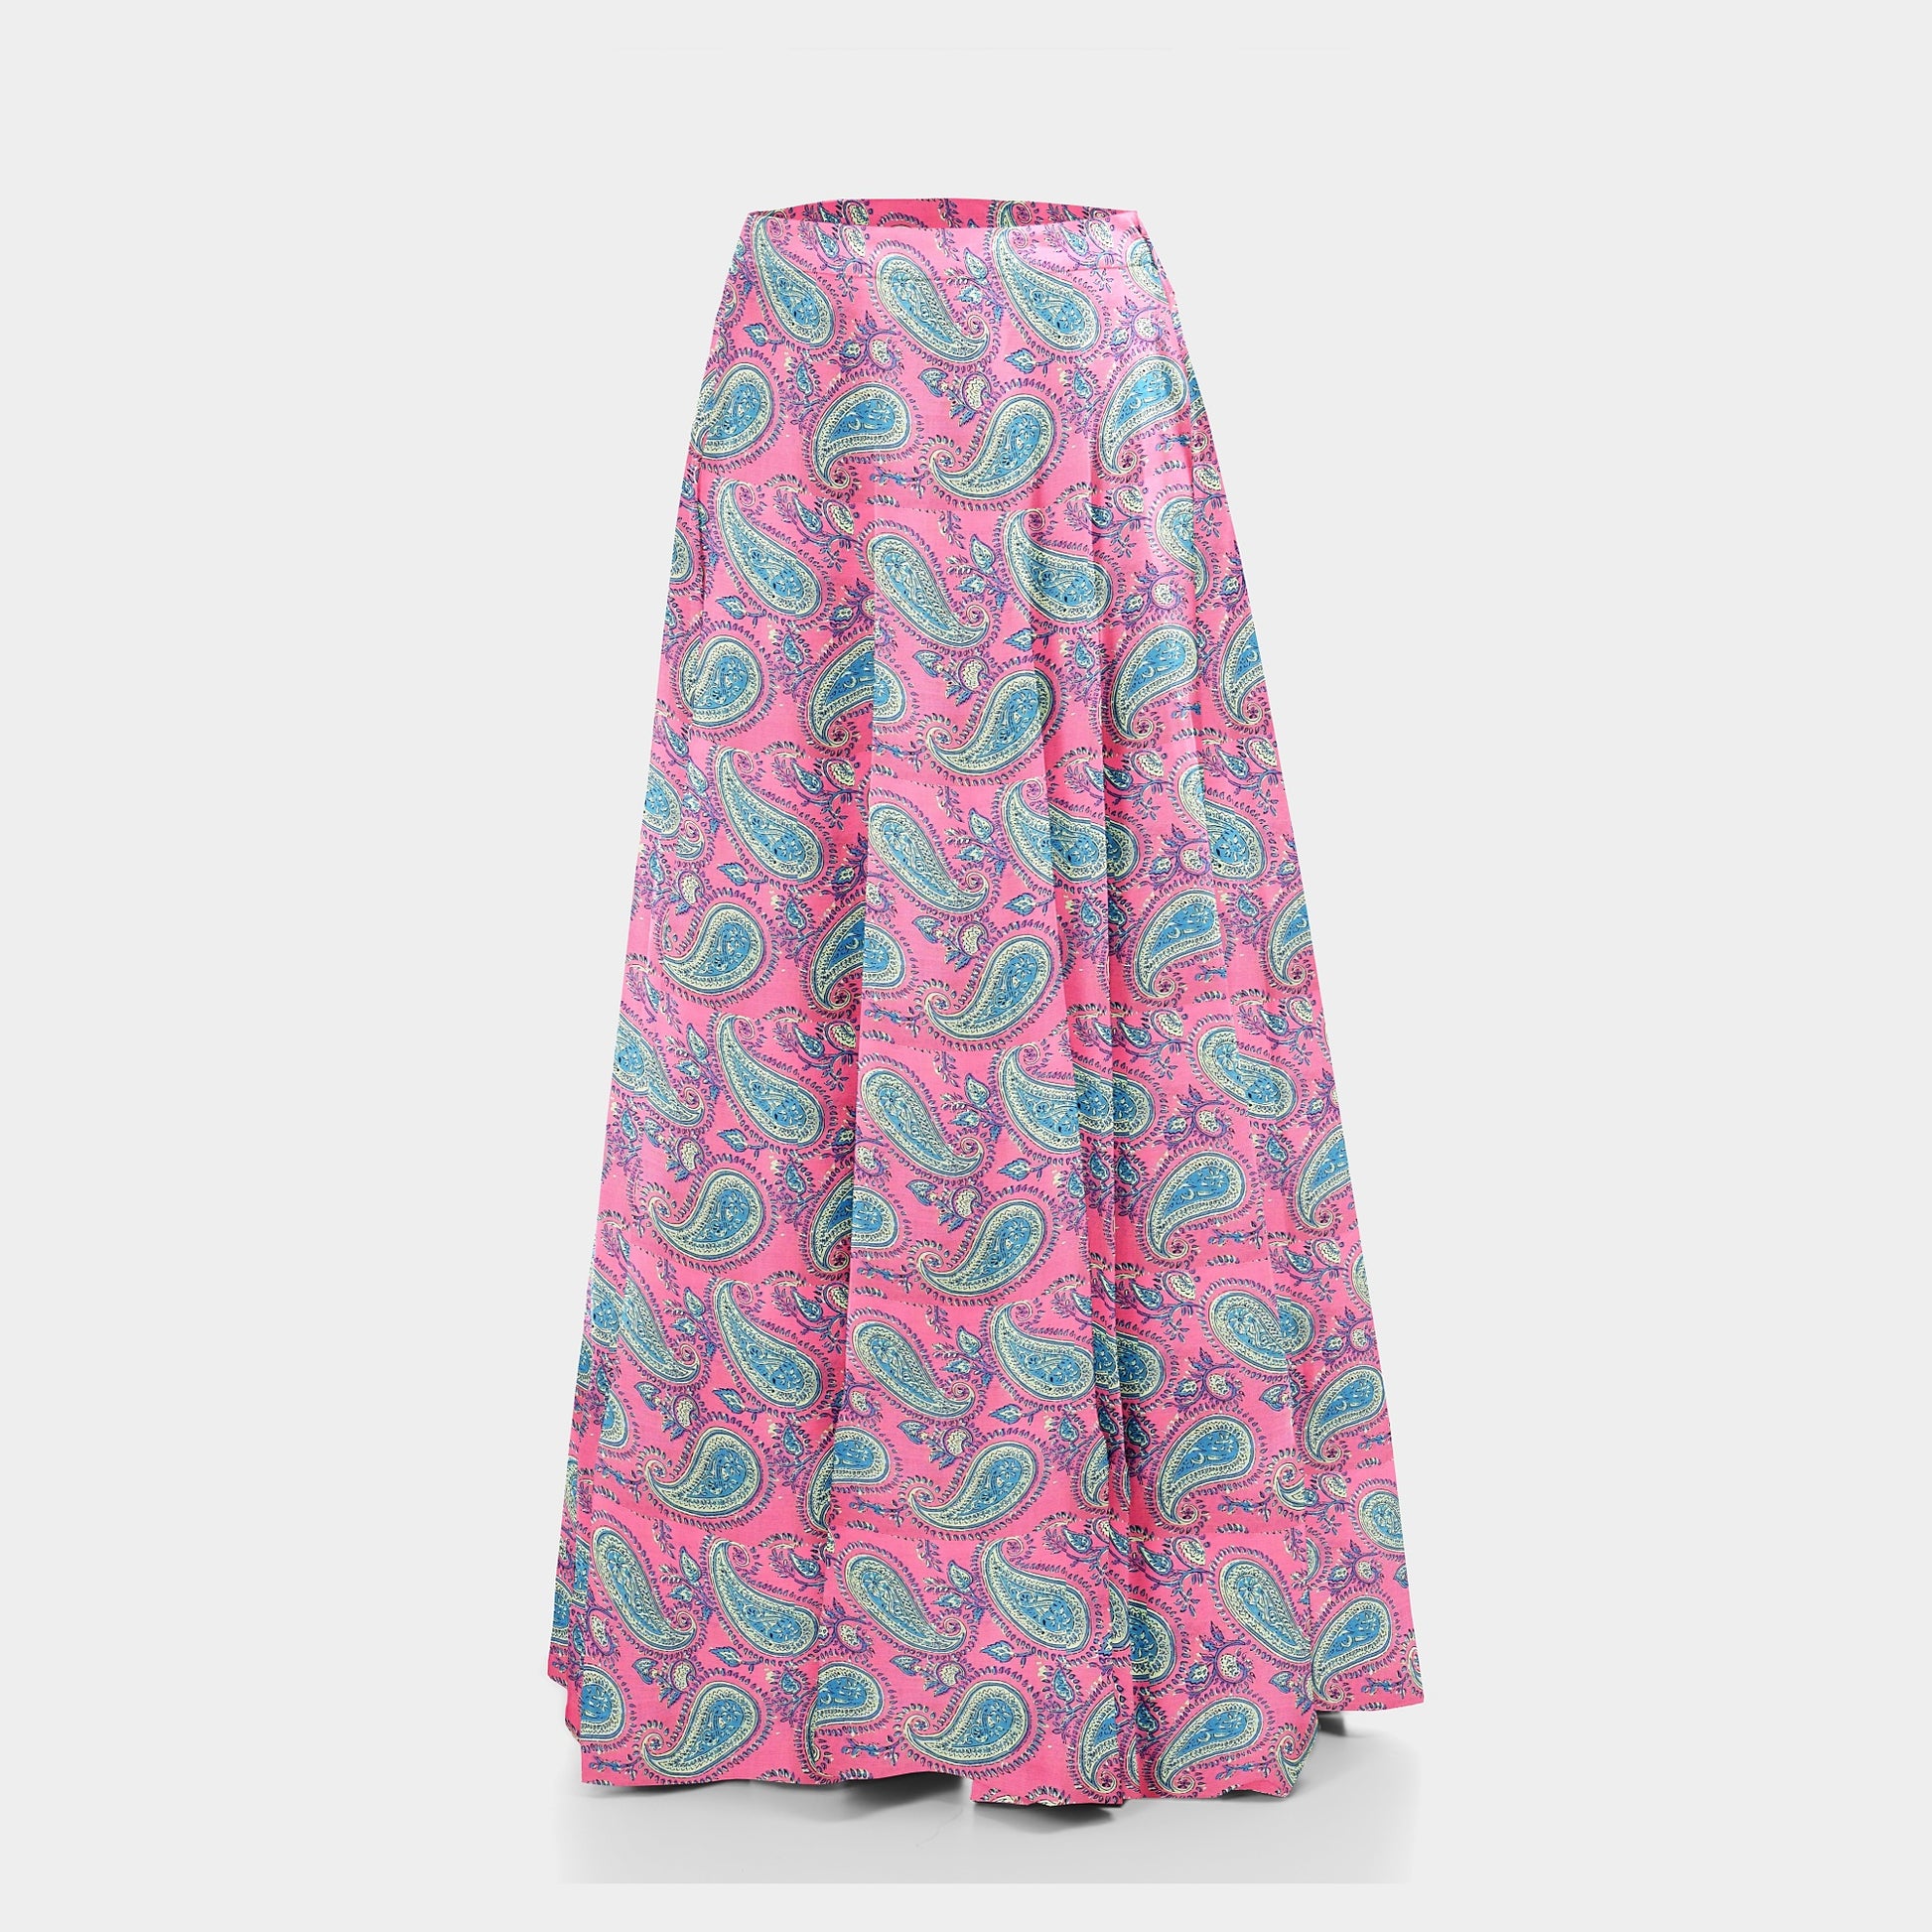 Pink Paisley Print Rayon Fabric Trade UNO